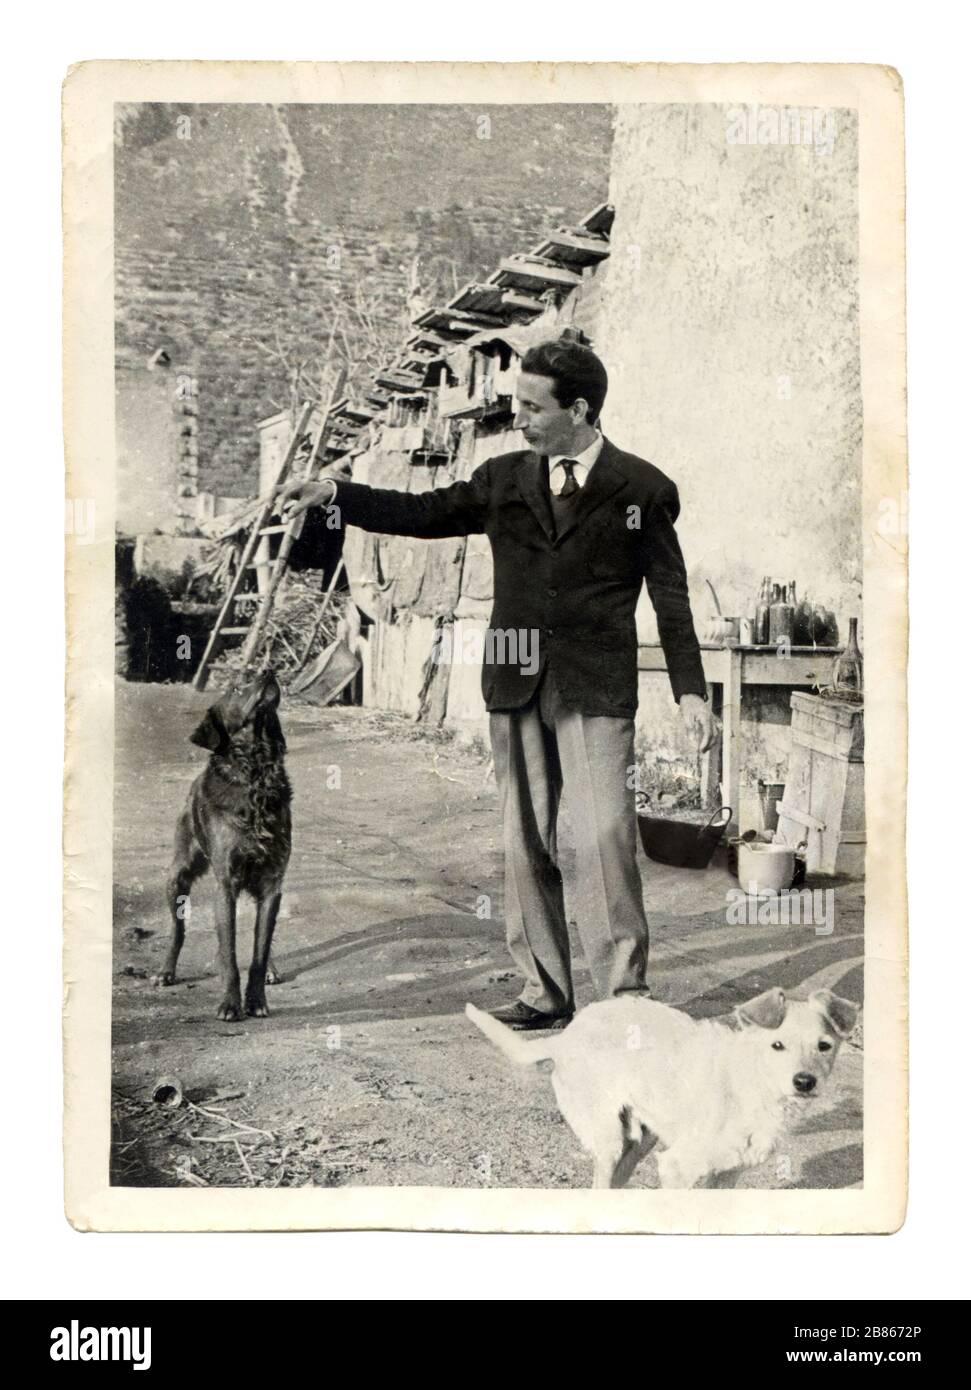 Vecchia stampa di una fotografia degli anni '60 in Italia. Uomo che gioca con due piccoli cani all'aperto. Foto Stock